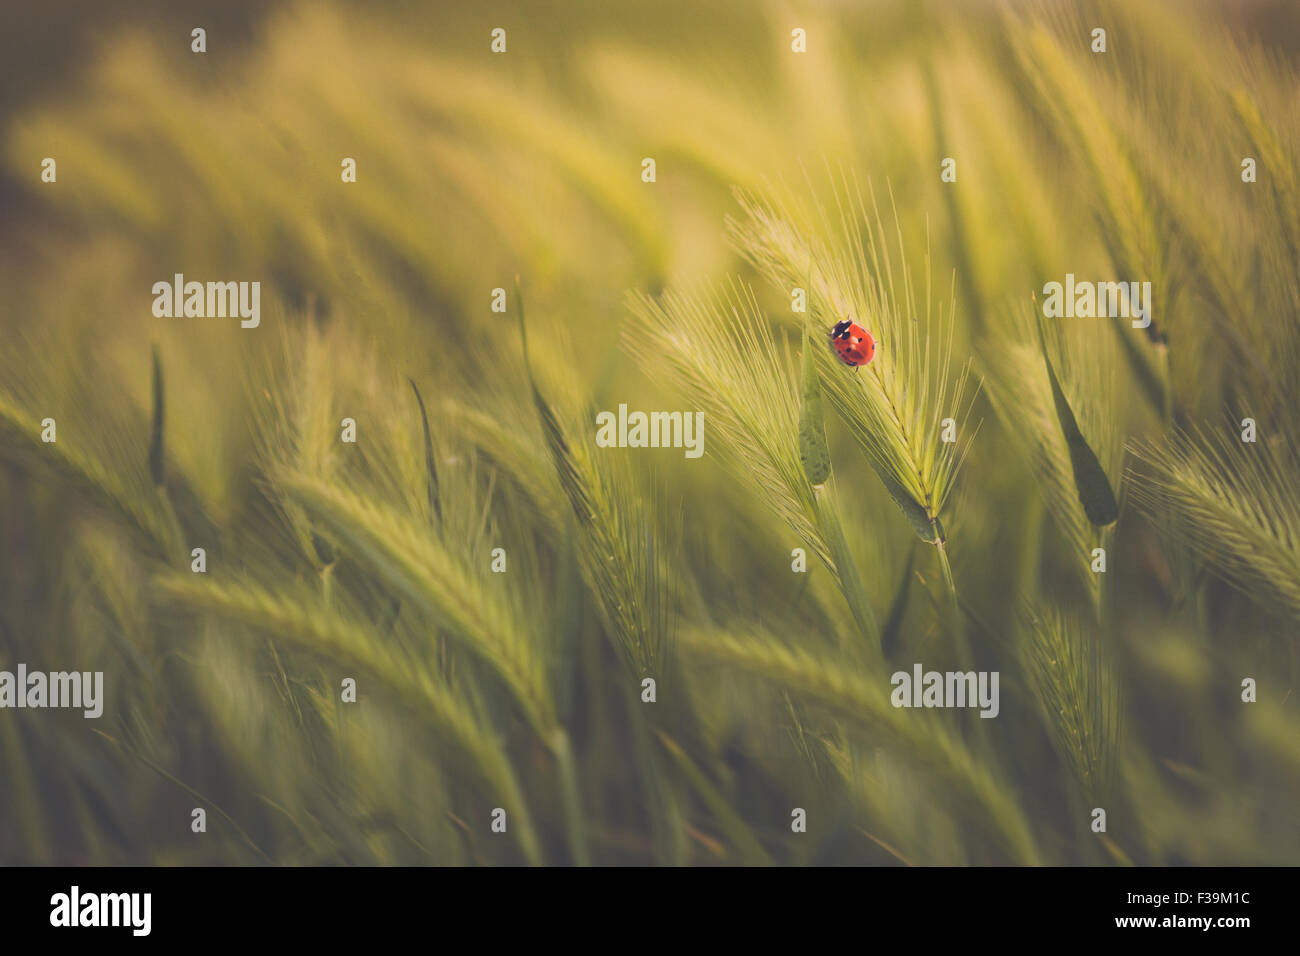 Ein Marienkäfer auf Ähre in einem grünen Weizenfeld in Nahaufnahme Stockfoto